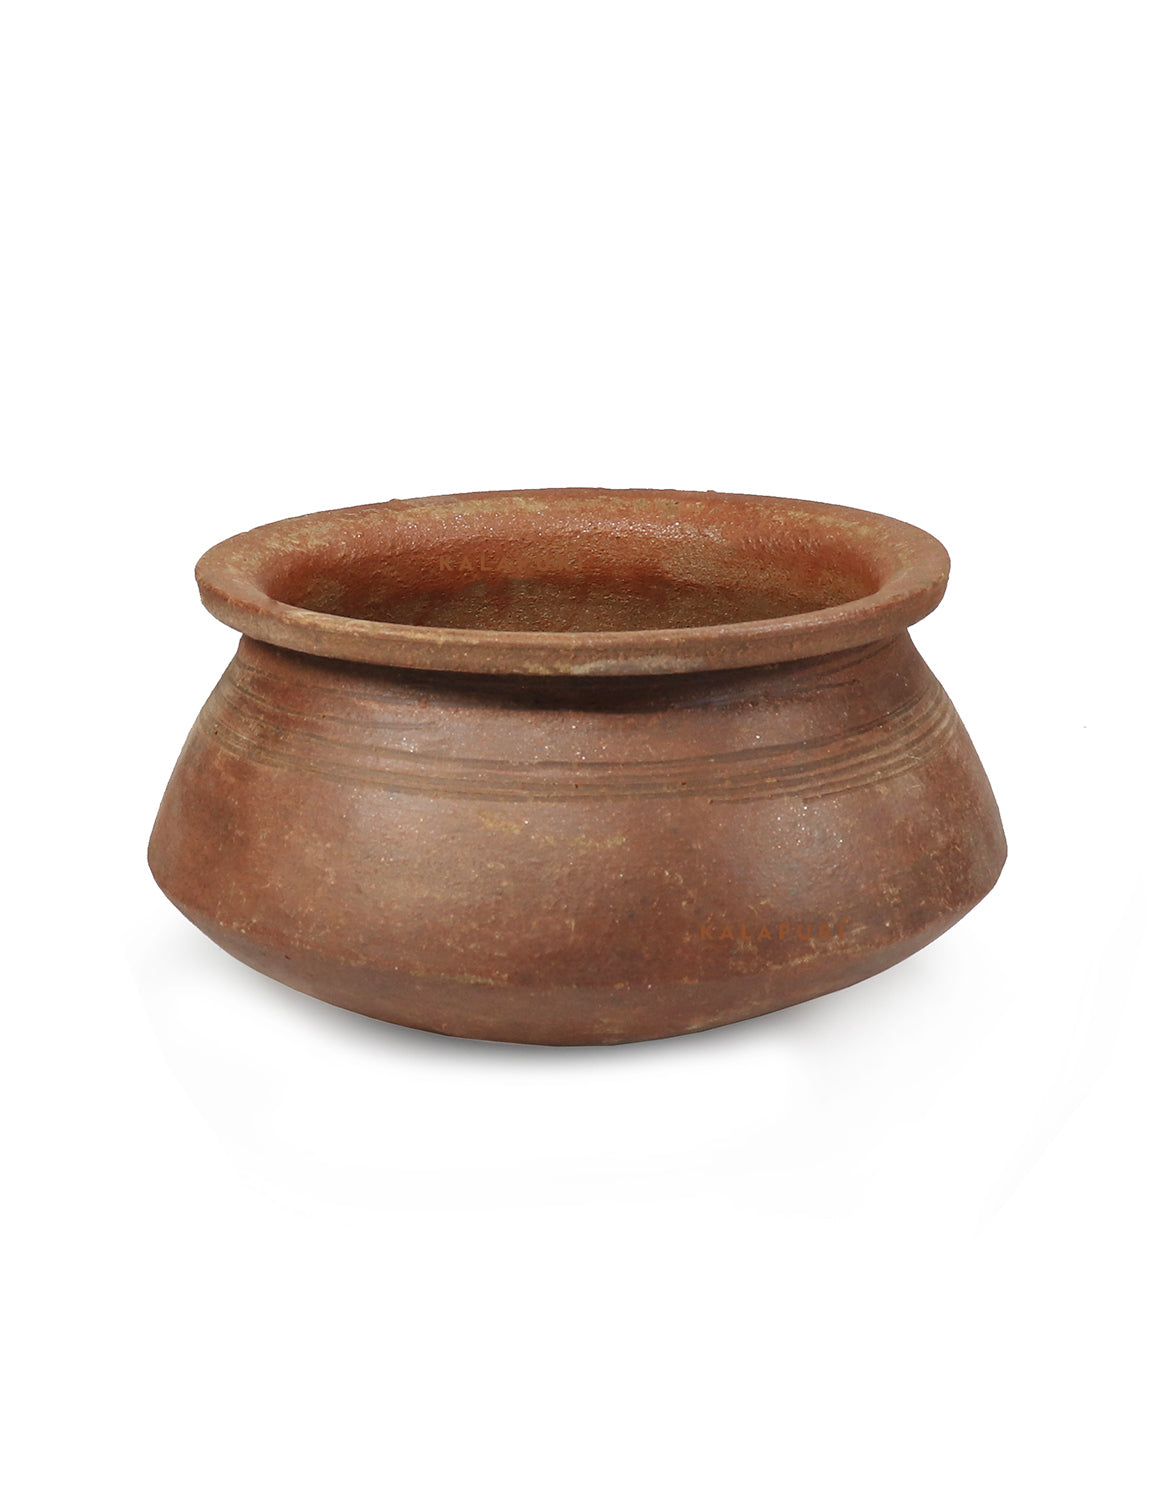 Natural Clay Handi/Earthen Kadai/Biryani Pot